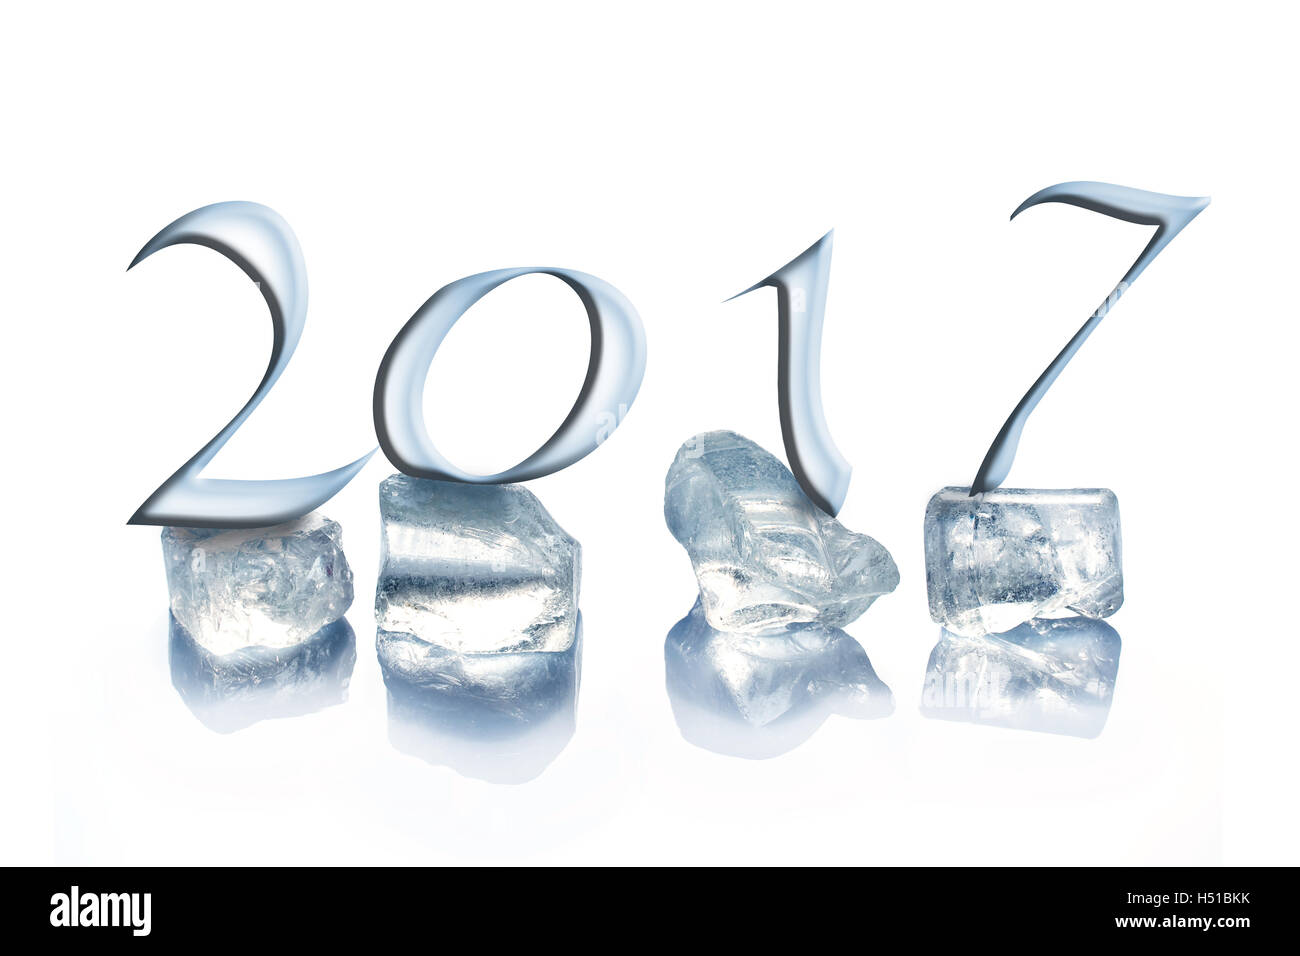 2017 cubetti di ghiaccio isolato su sfondo bianco Foto Stock